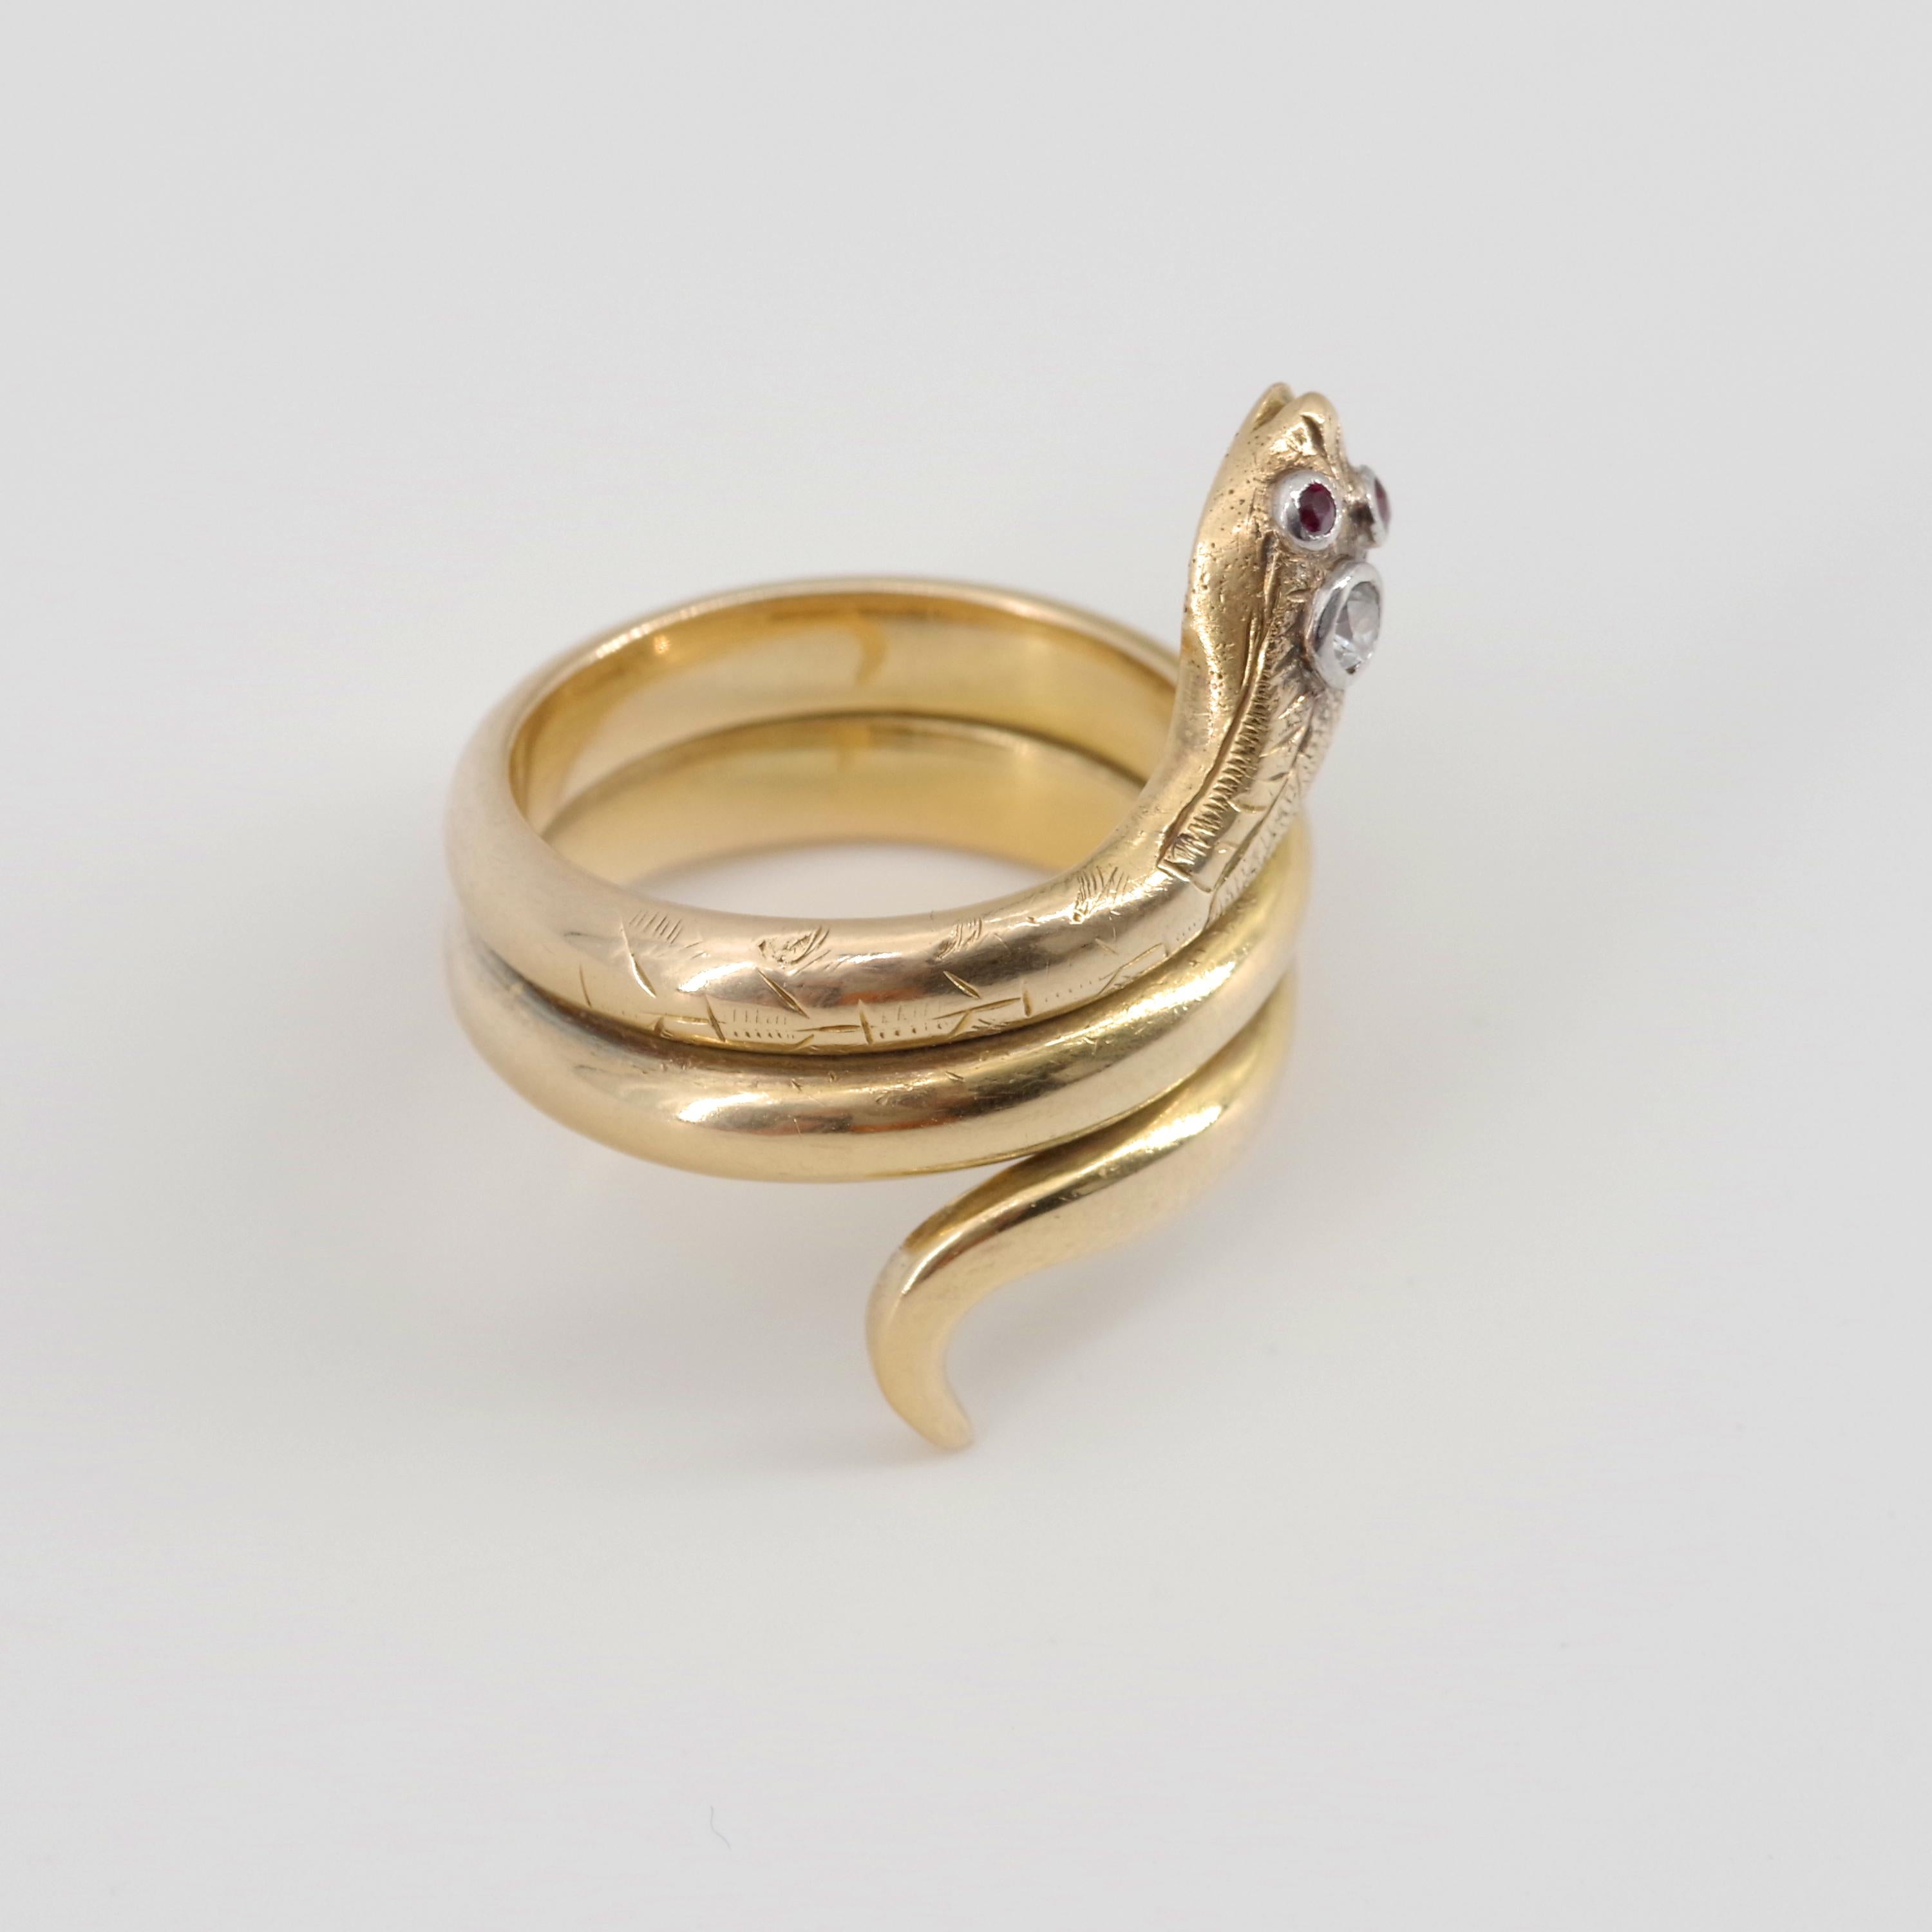 Women's or Men's Men's Snake Ring from Gold Rush Era Devours All Other Snake Rings